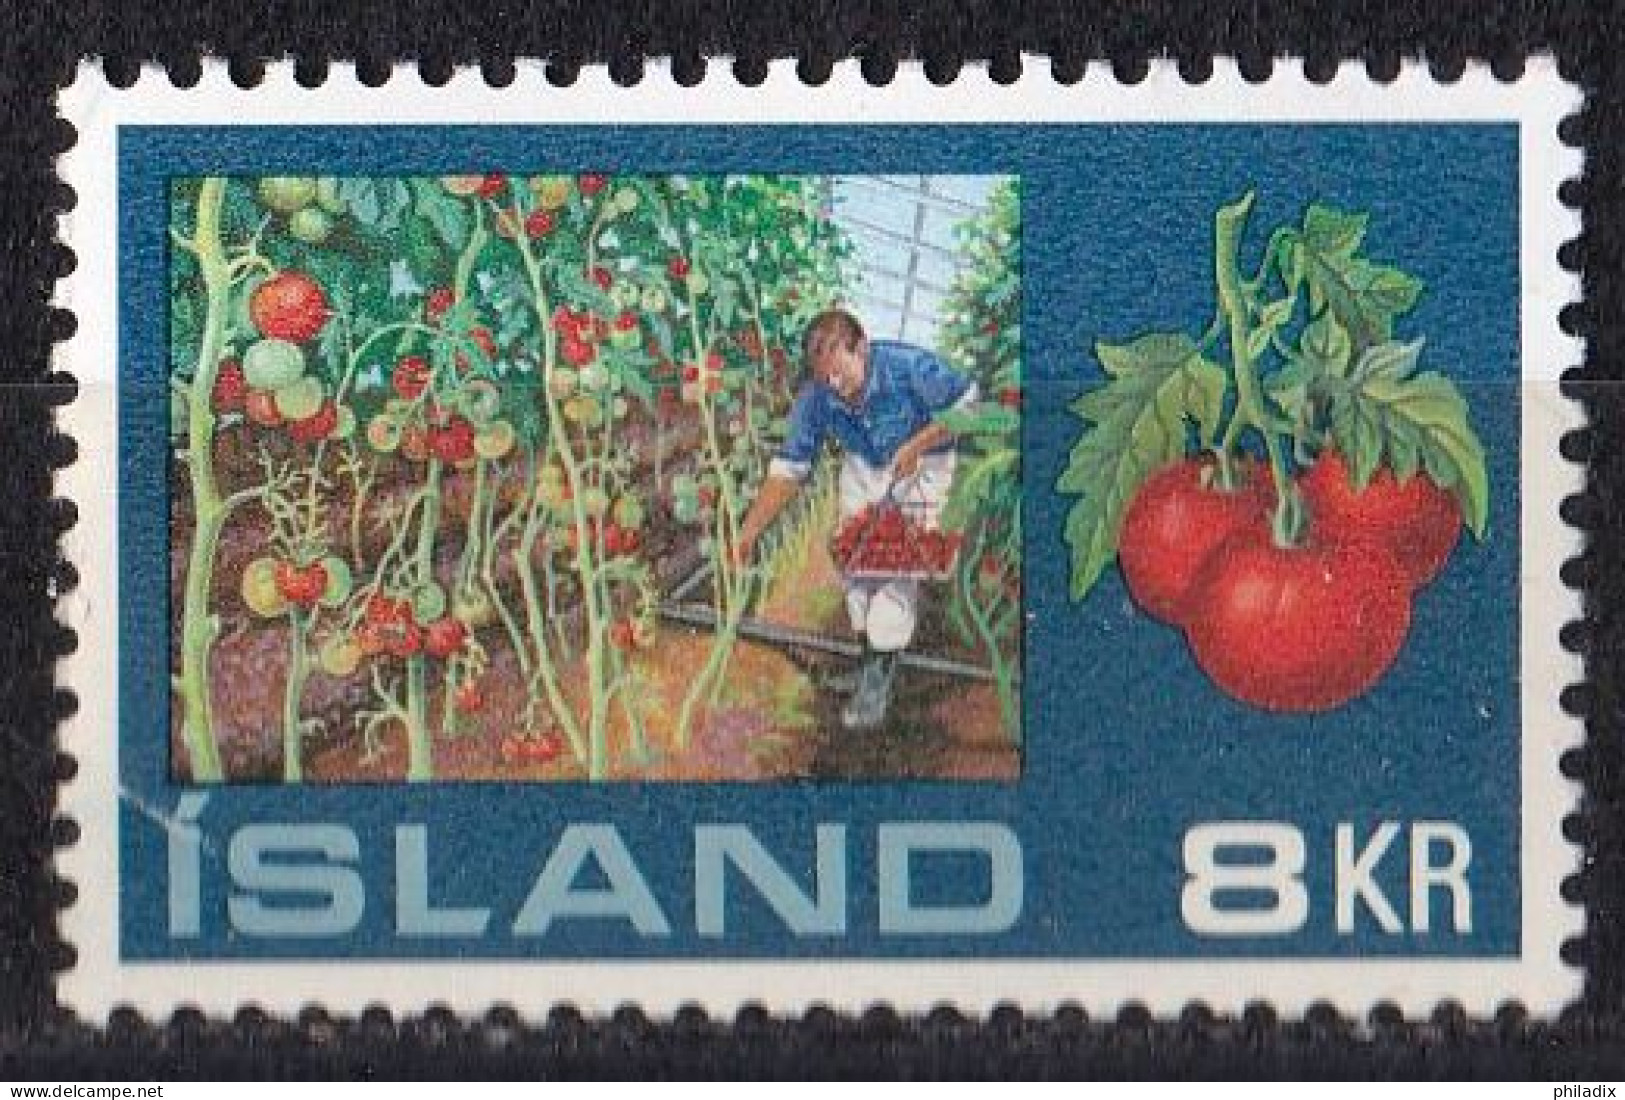 Island Marke Von 1972 **/MNH (A2-7) - Unused Stamps